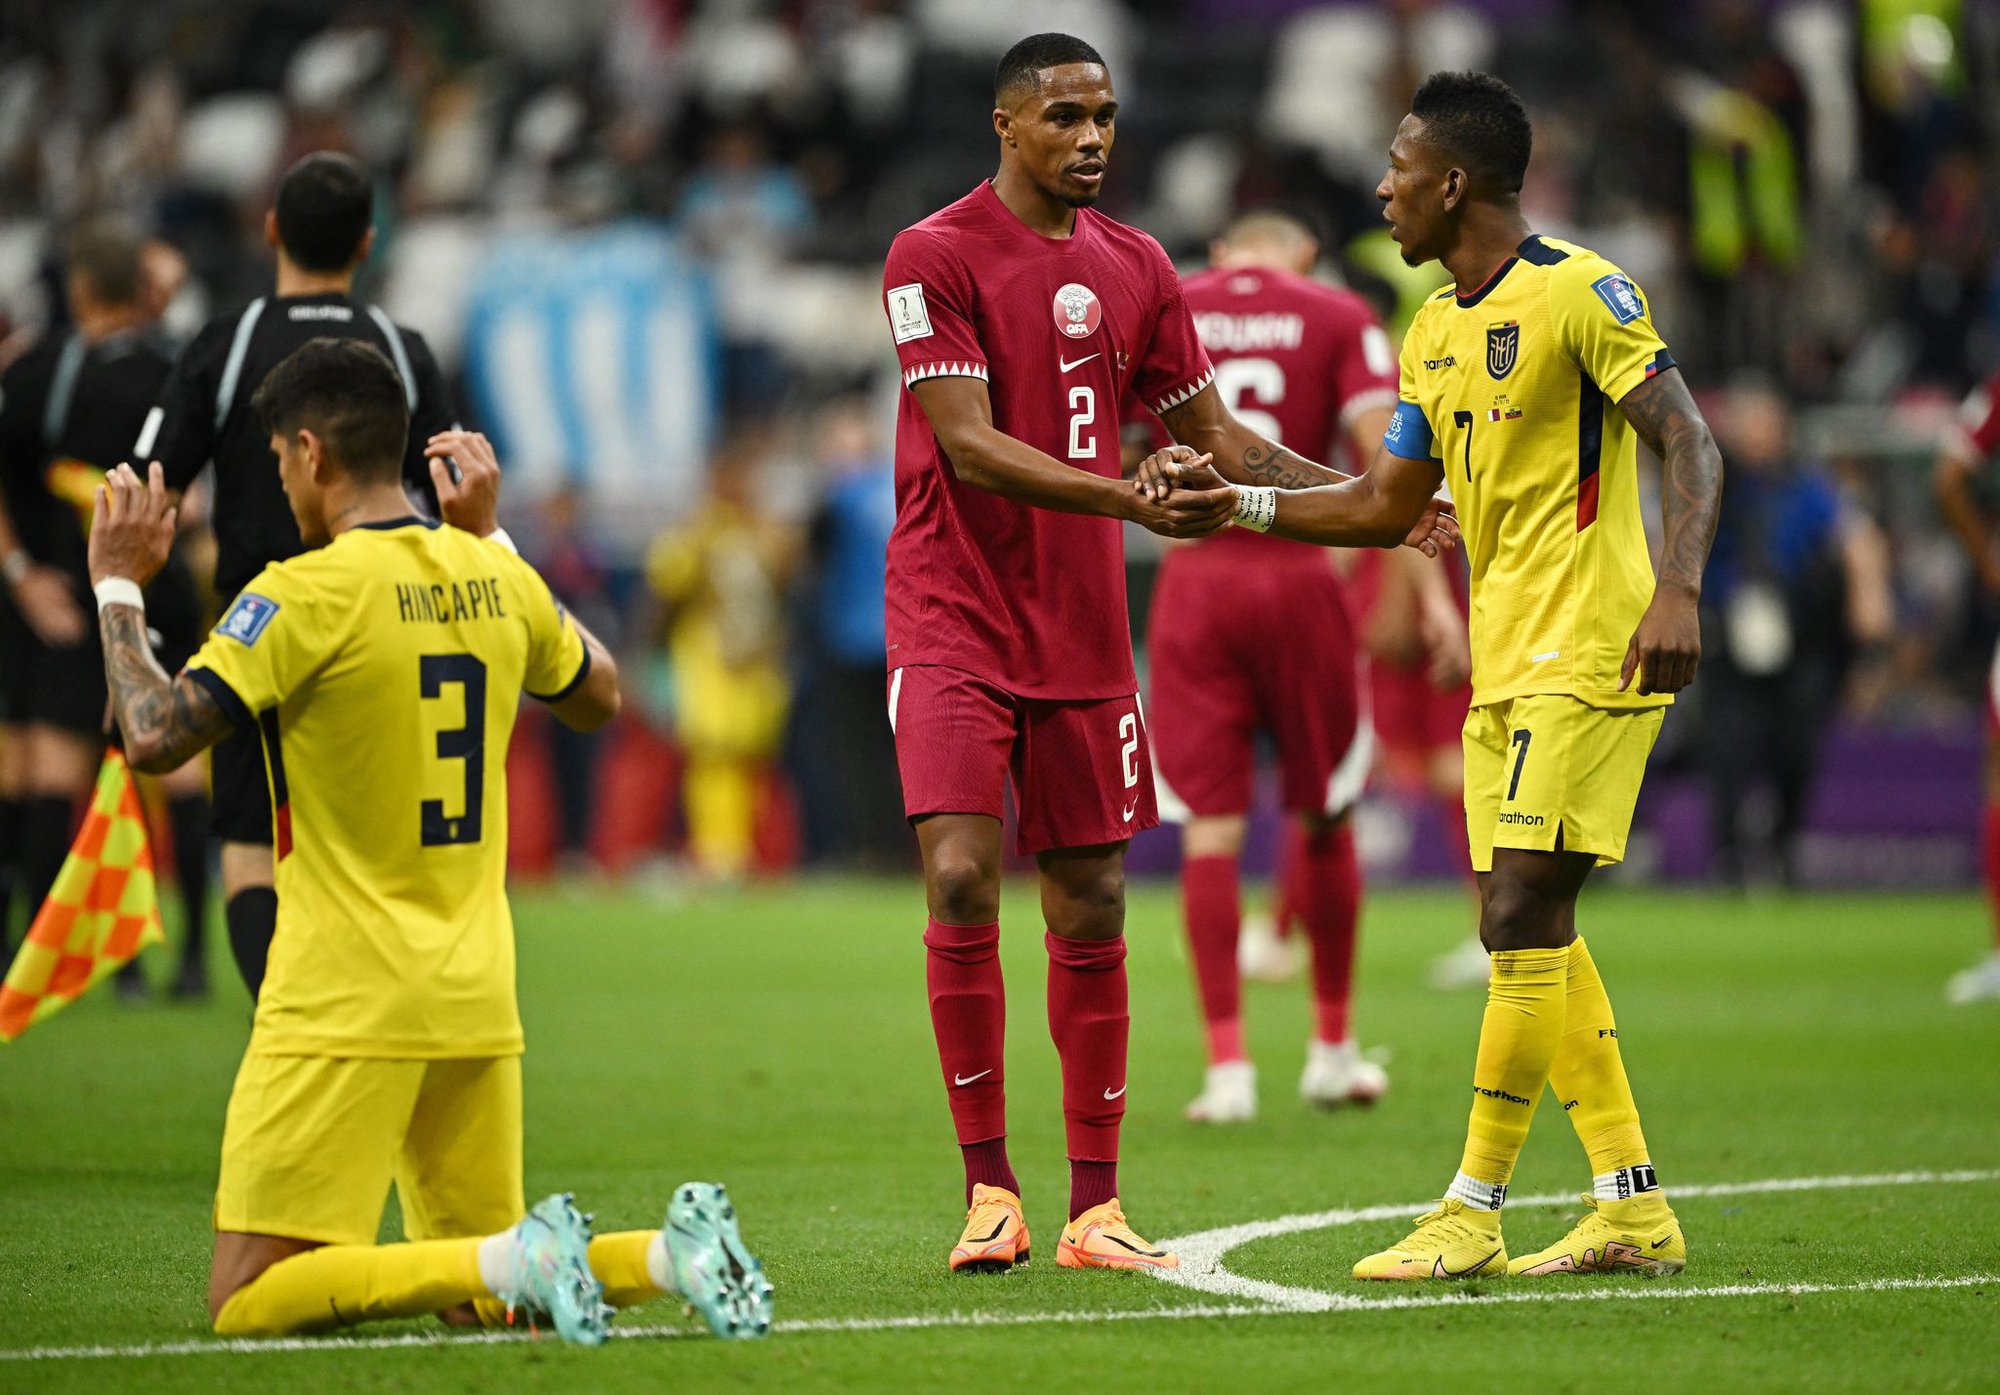 Qatar - Ecuador: Thi đấu bế tắc, chủ nhà nhận thất bại 0-2 trận khai mạc - Ảnh 9.